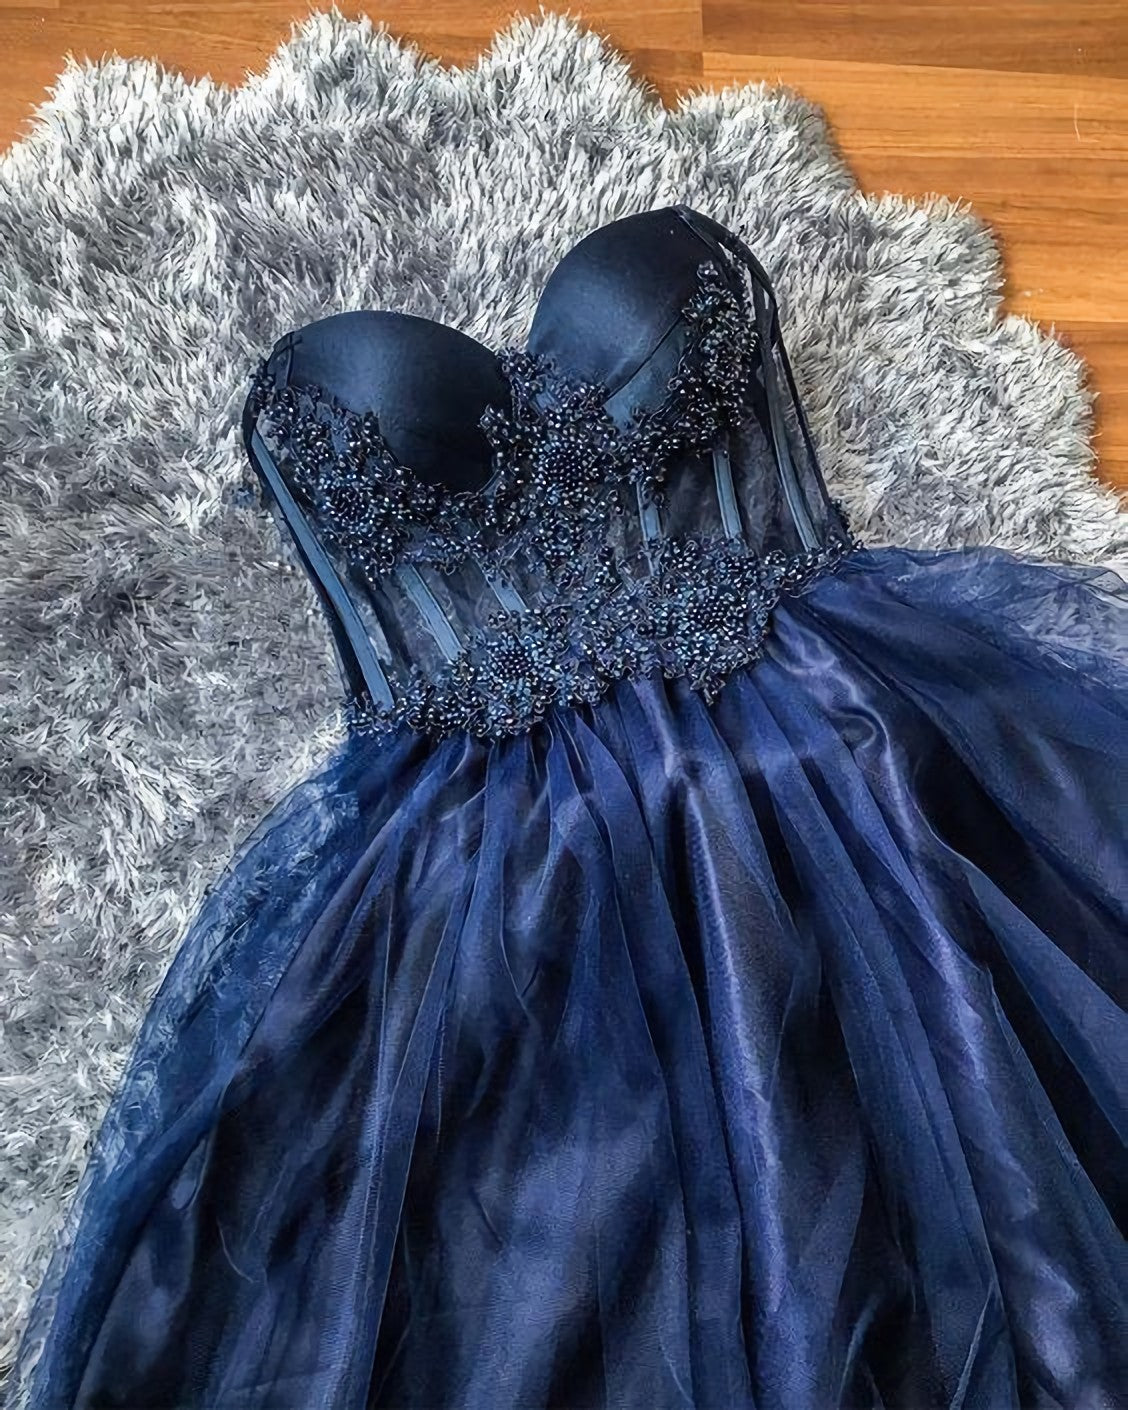 Prom Dress, Ball Gown Formal Dress, Evening Gown Navy Blue Evening Dress